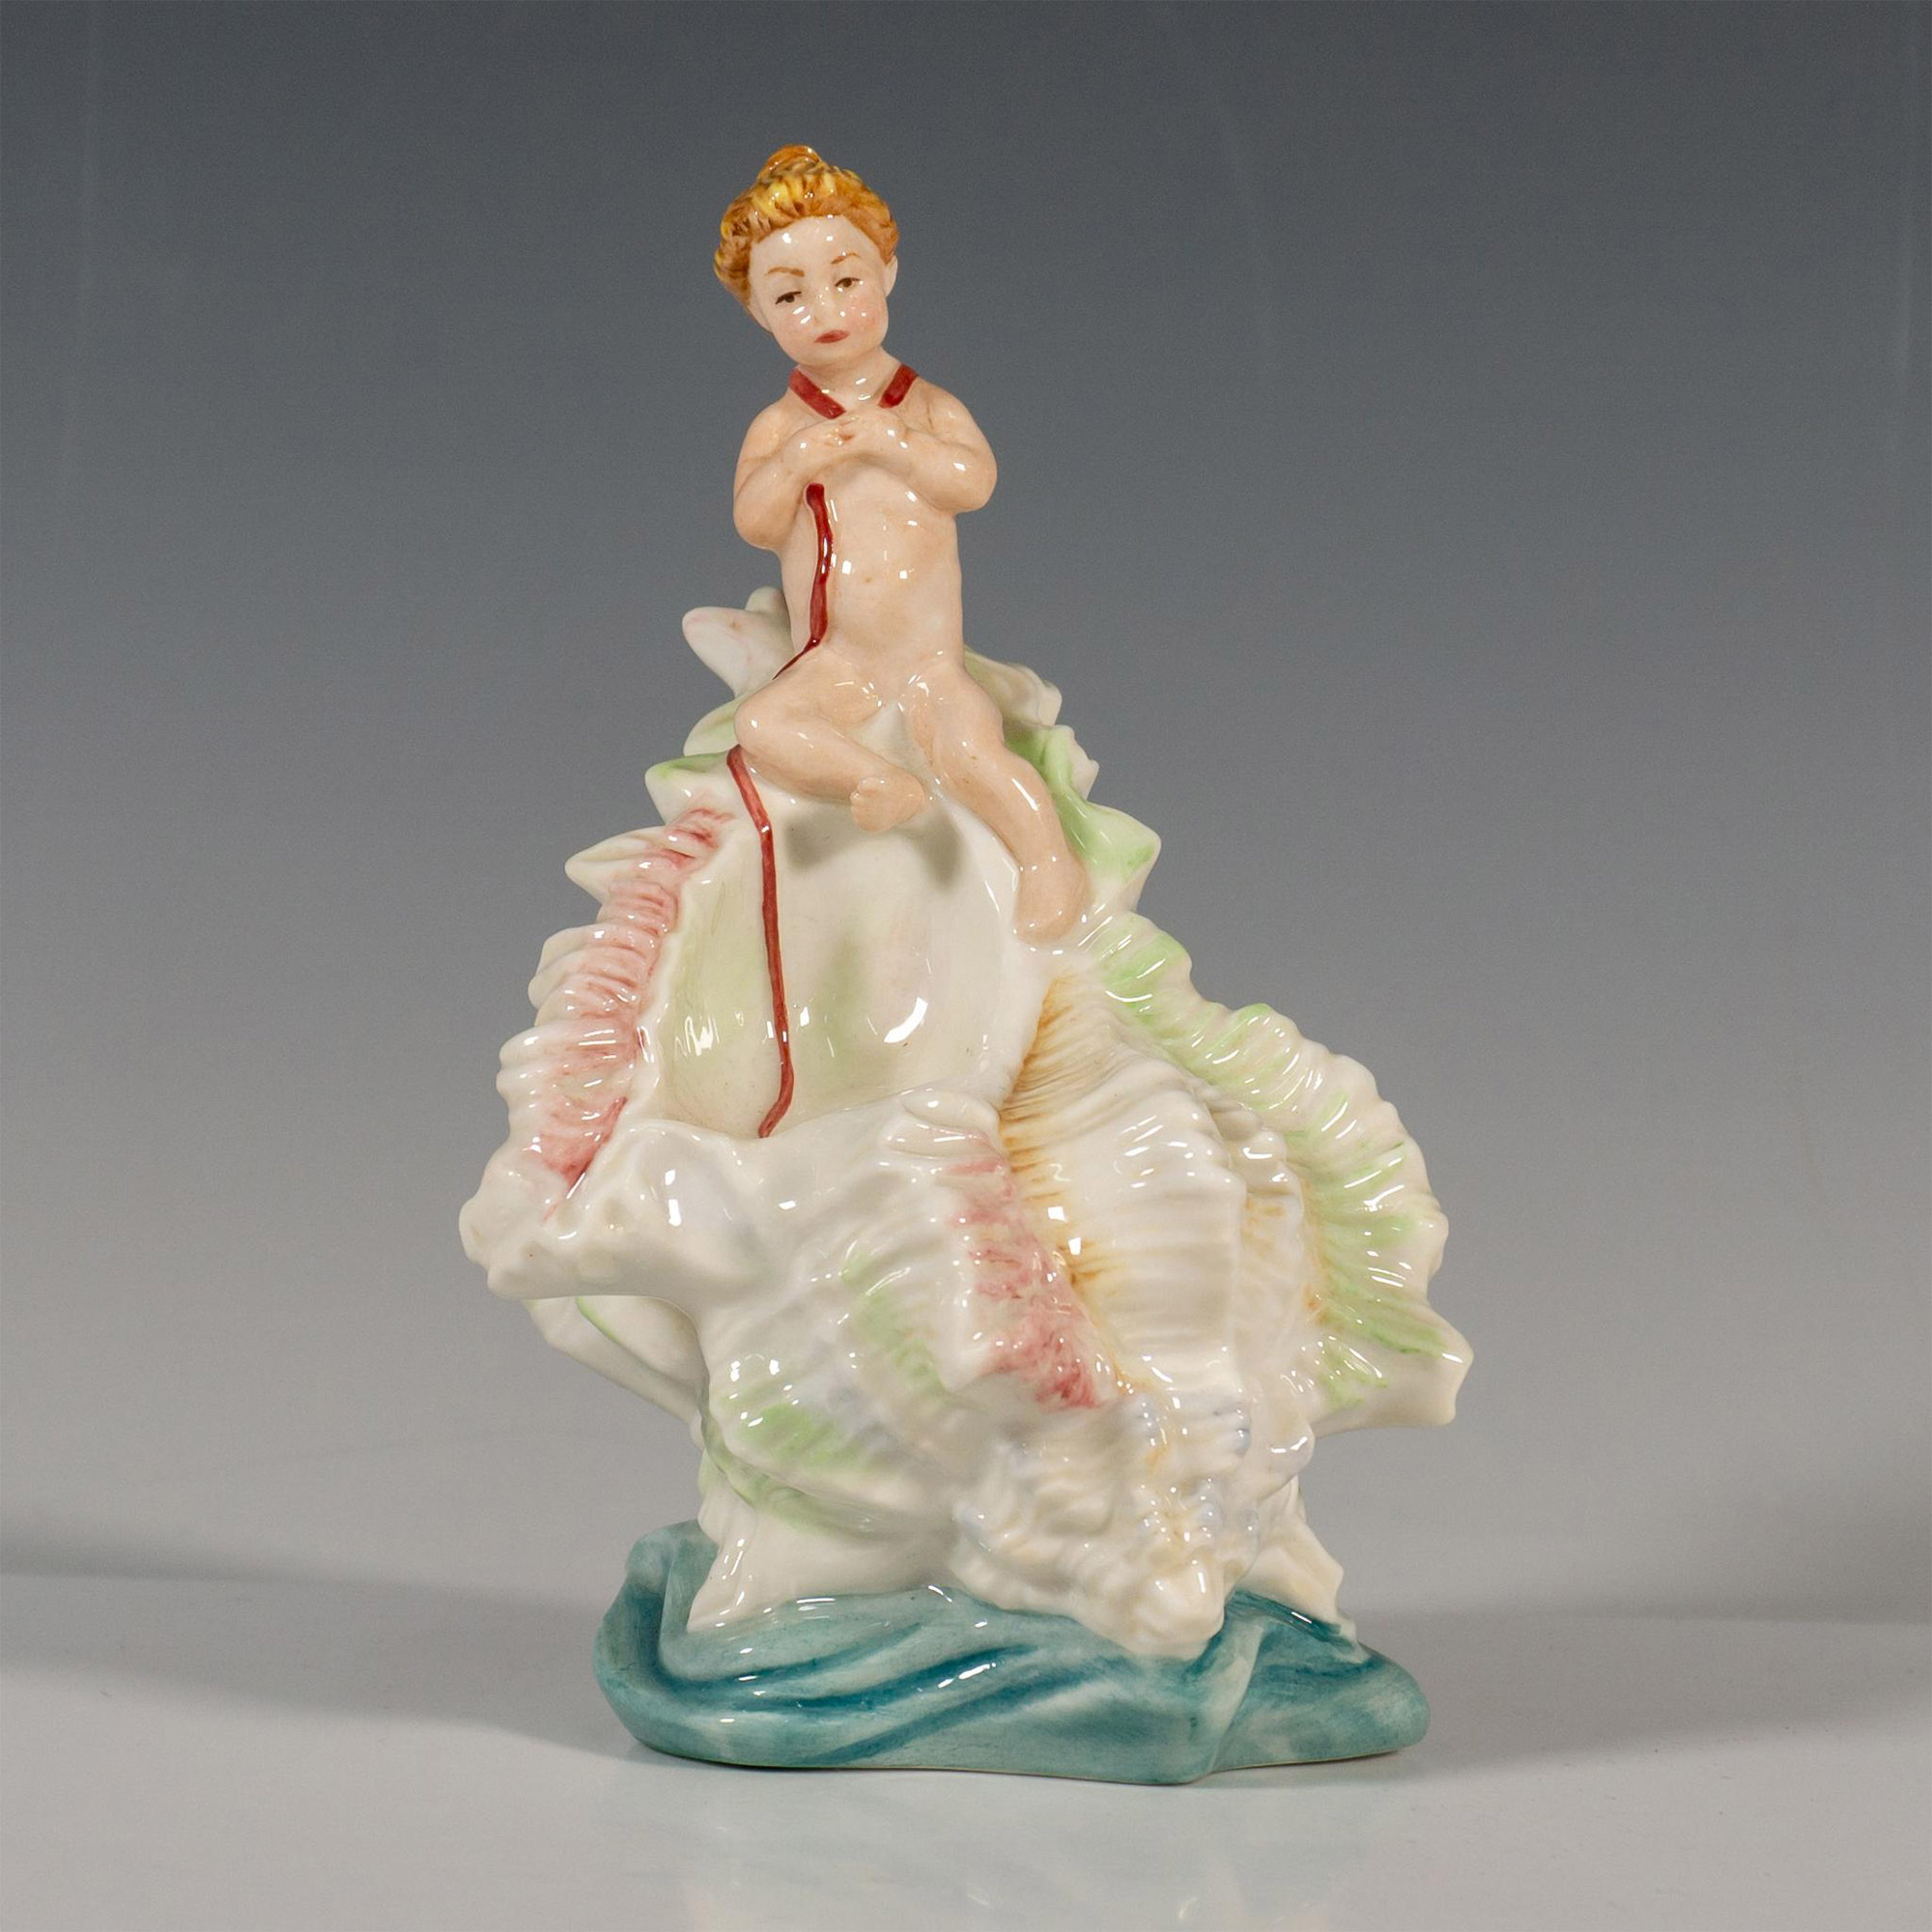 Minton Porcelain Figurine, L'enfant Aux Rubans - Image 2 of 5